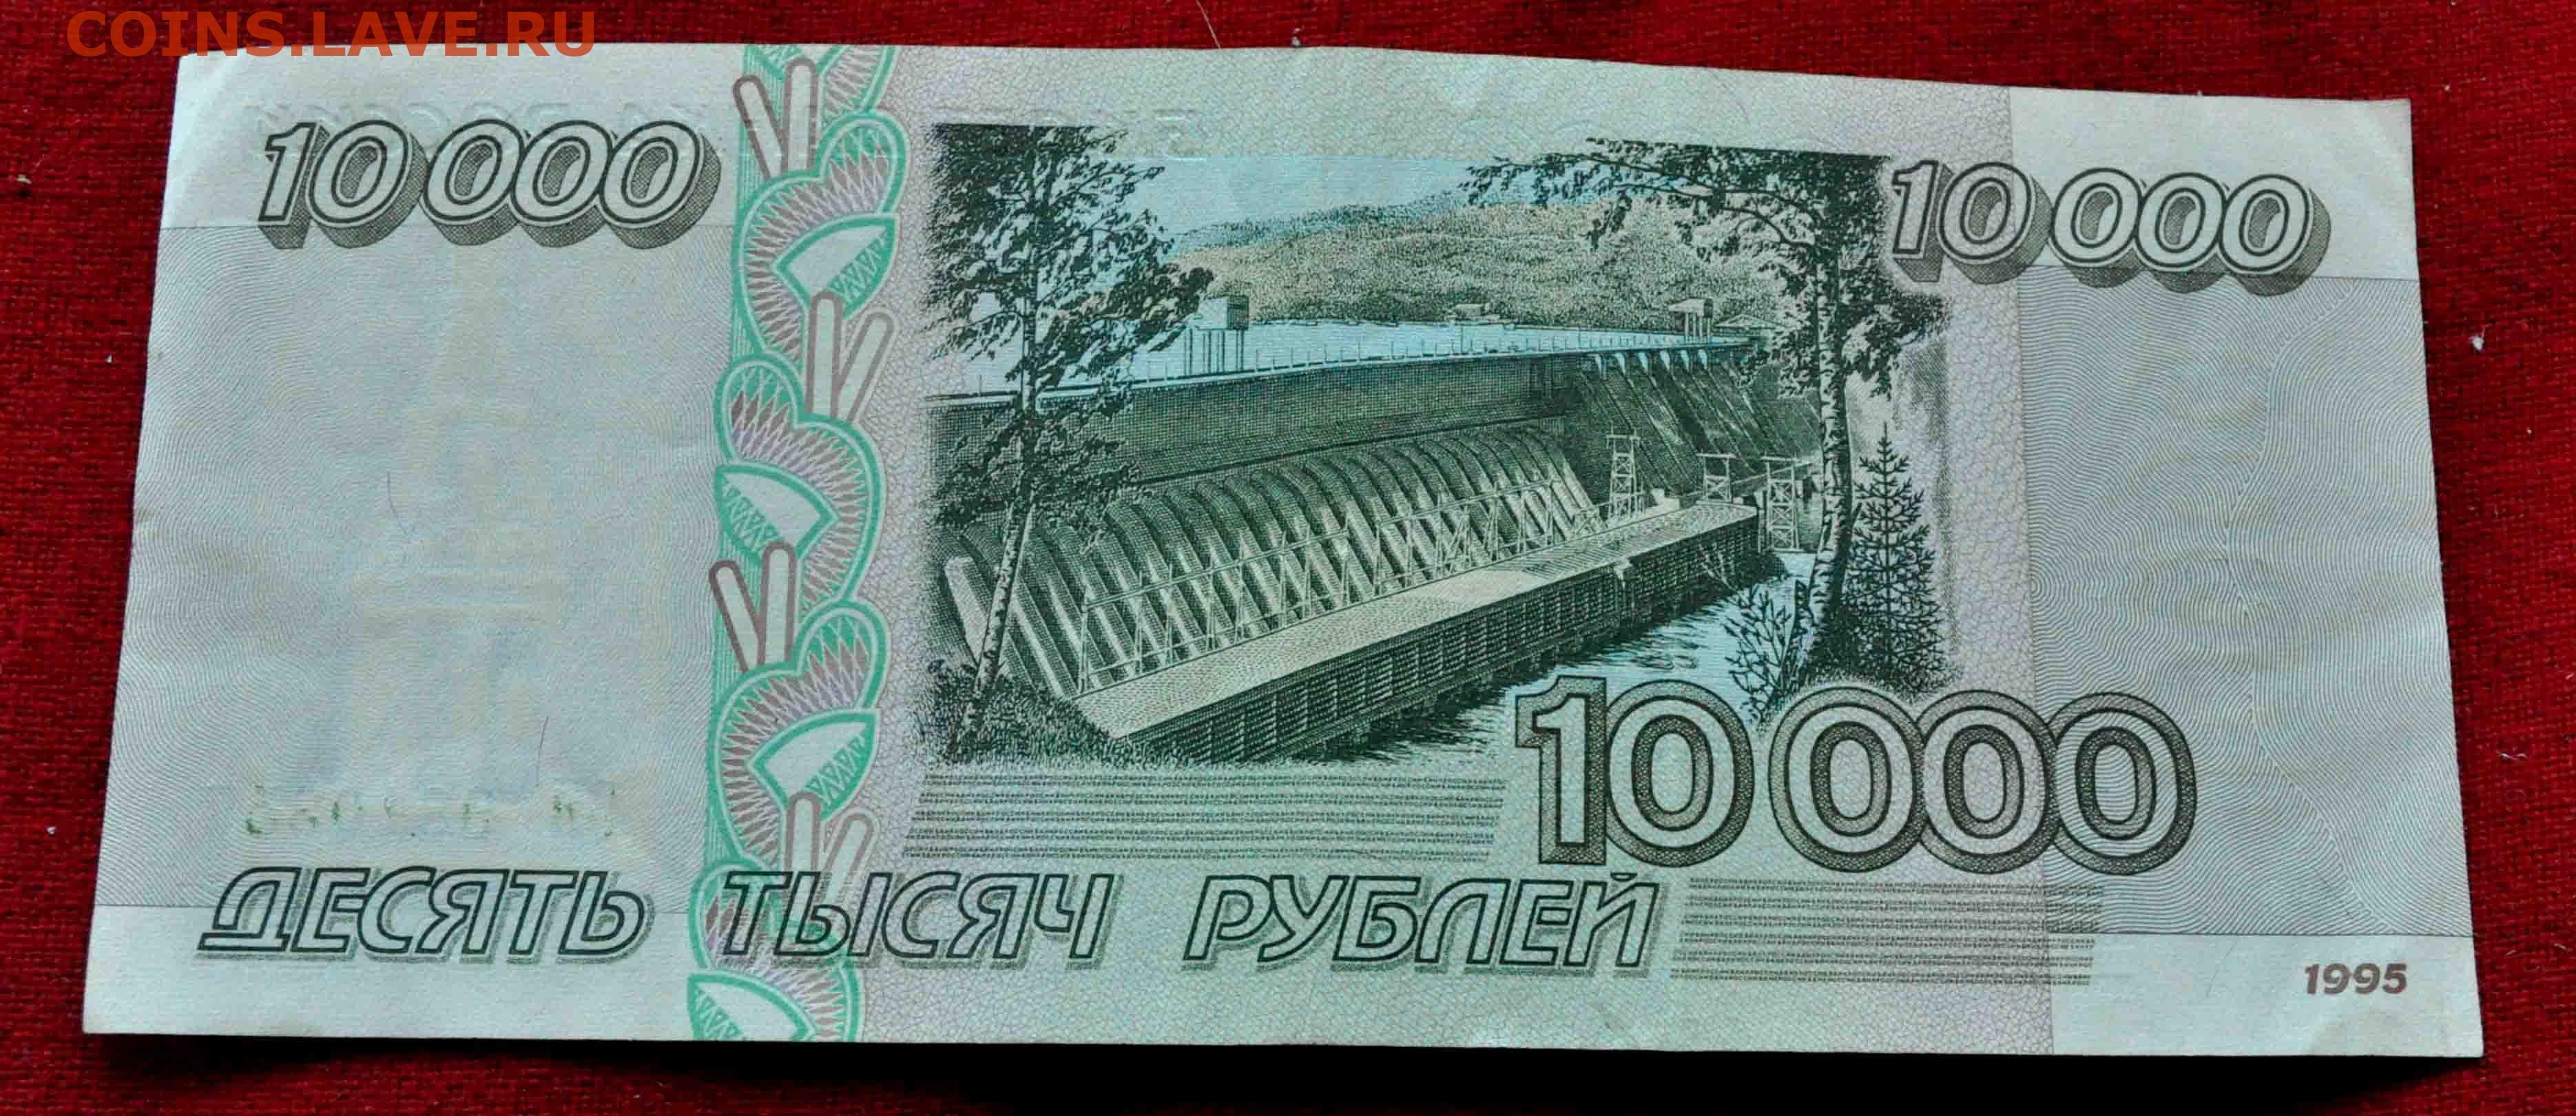 Д3 10 000. Десять тысяч рублей купюра. Купюра 10000 рублей 1995 года. 10 Тысяч рублей купюра. Десять тысяч рублей 1995 года.